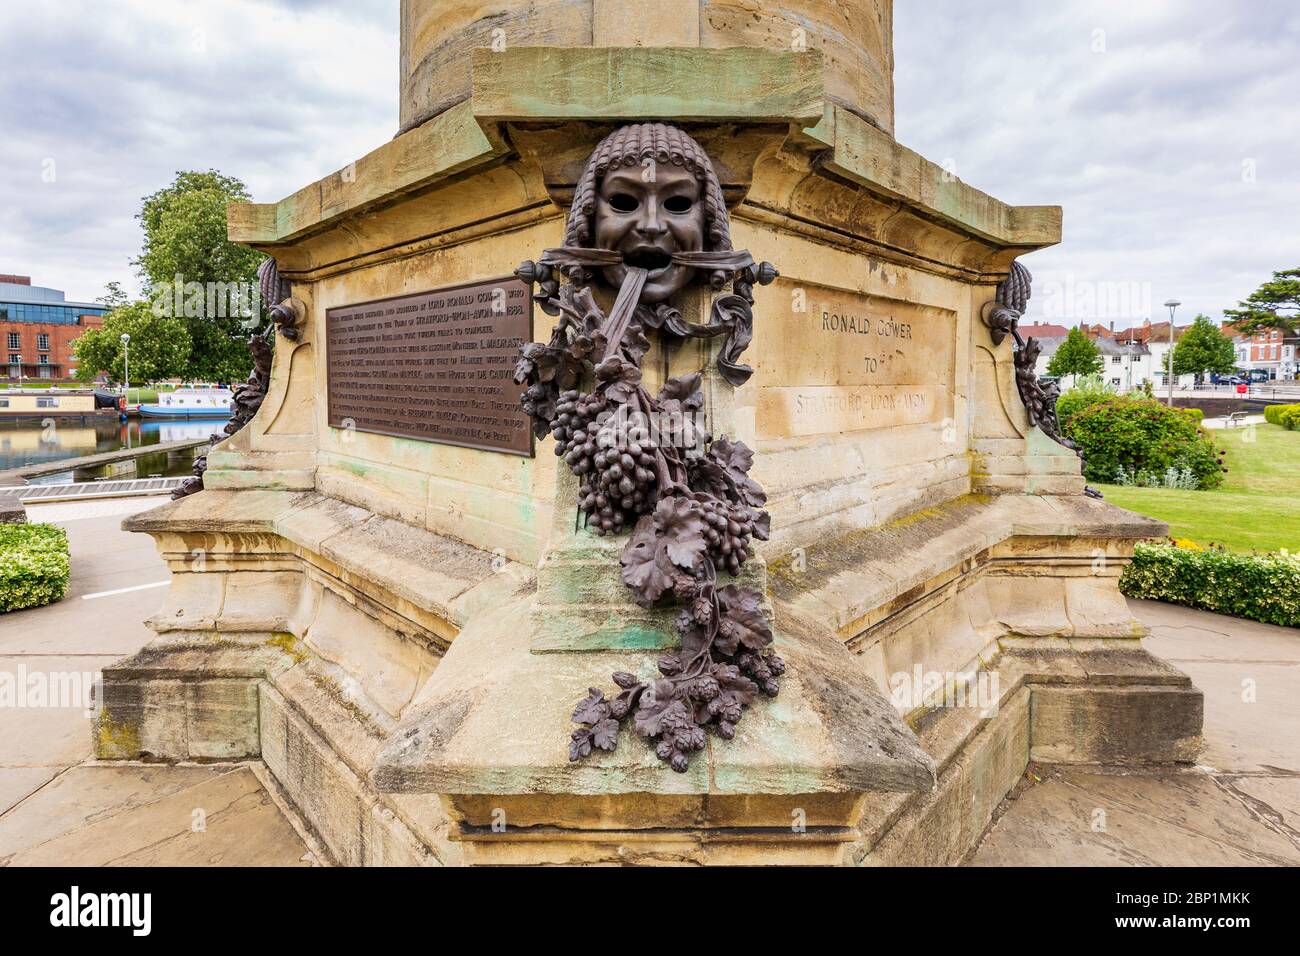 Eine griechische Theatermaske auf dem Gower Monument, die Comedy mit Hopfen und Trauben, Stratford-upon-Avon, England, darstellt Stockfoto